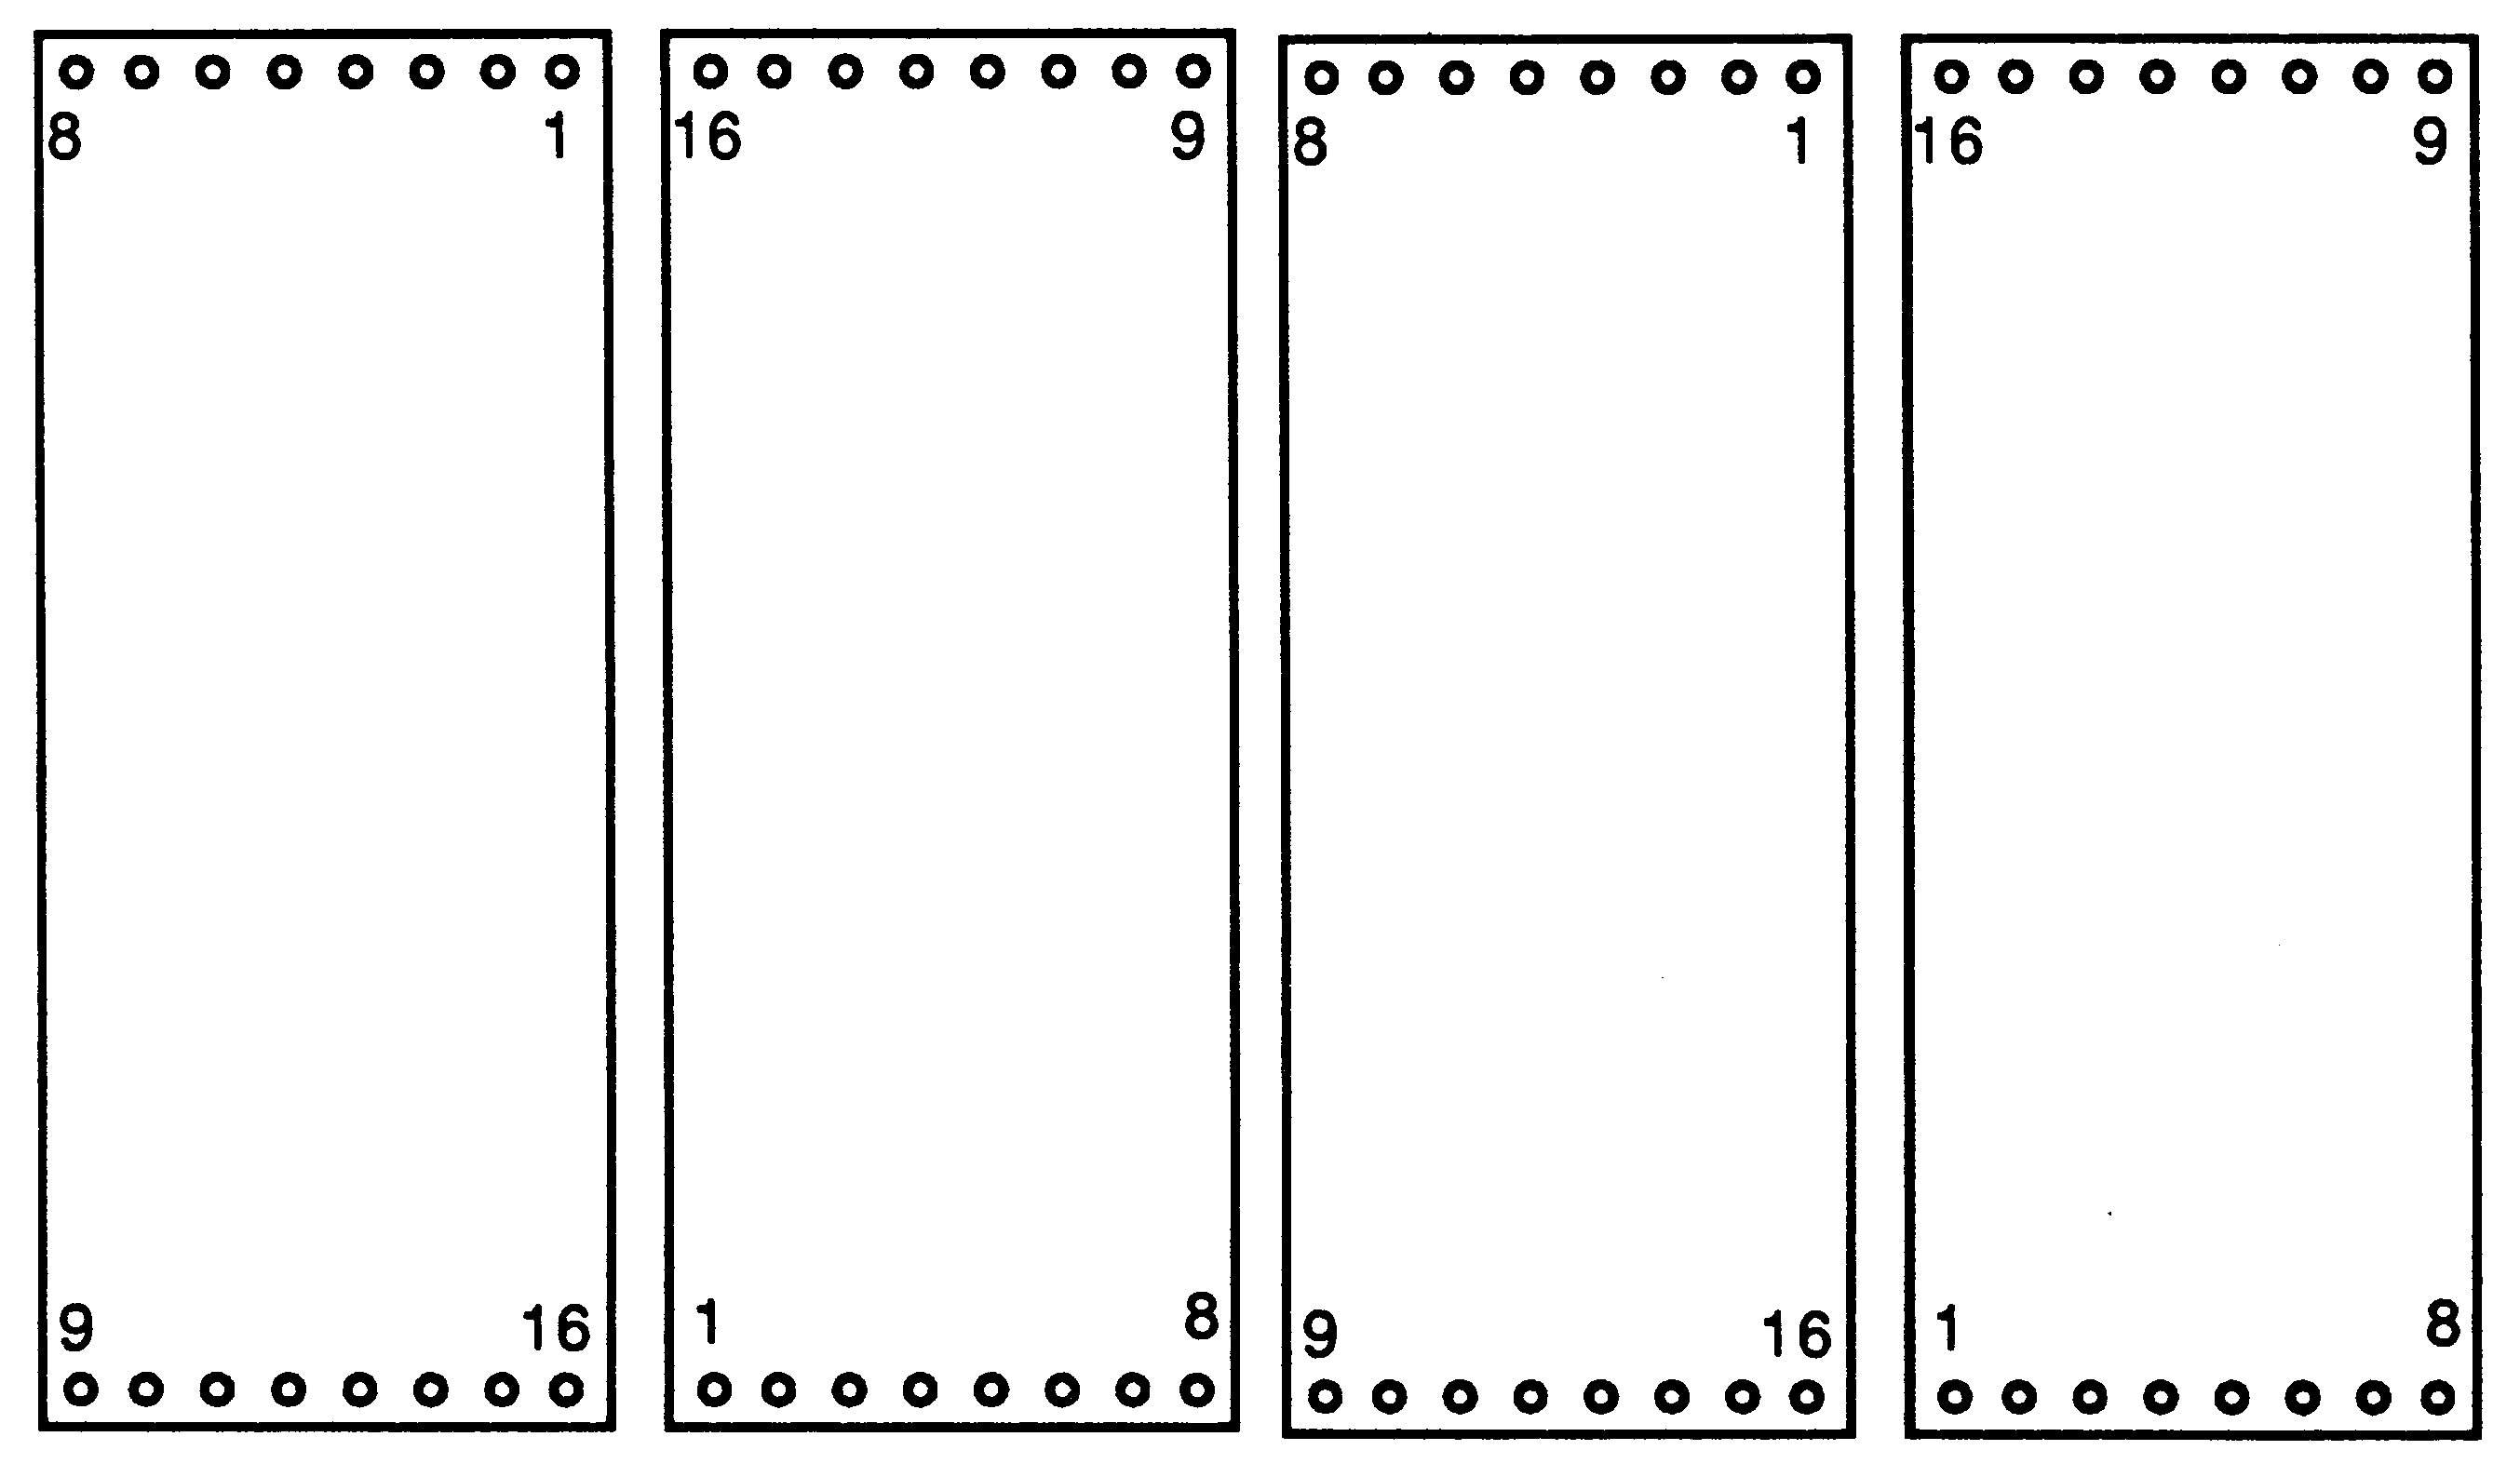 Orientation of module slots